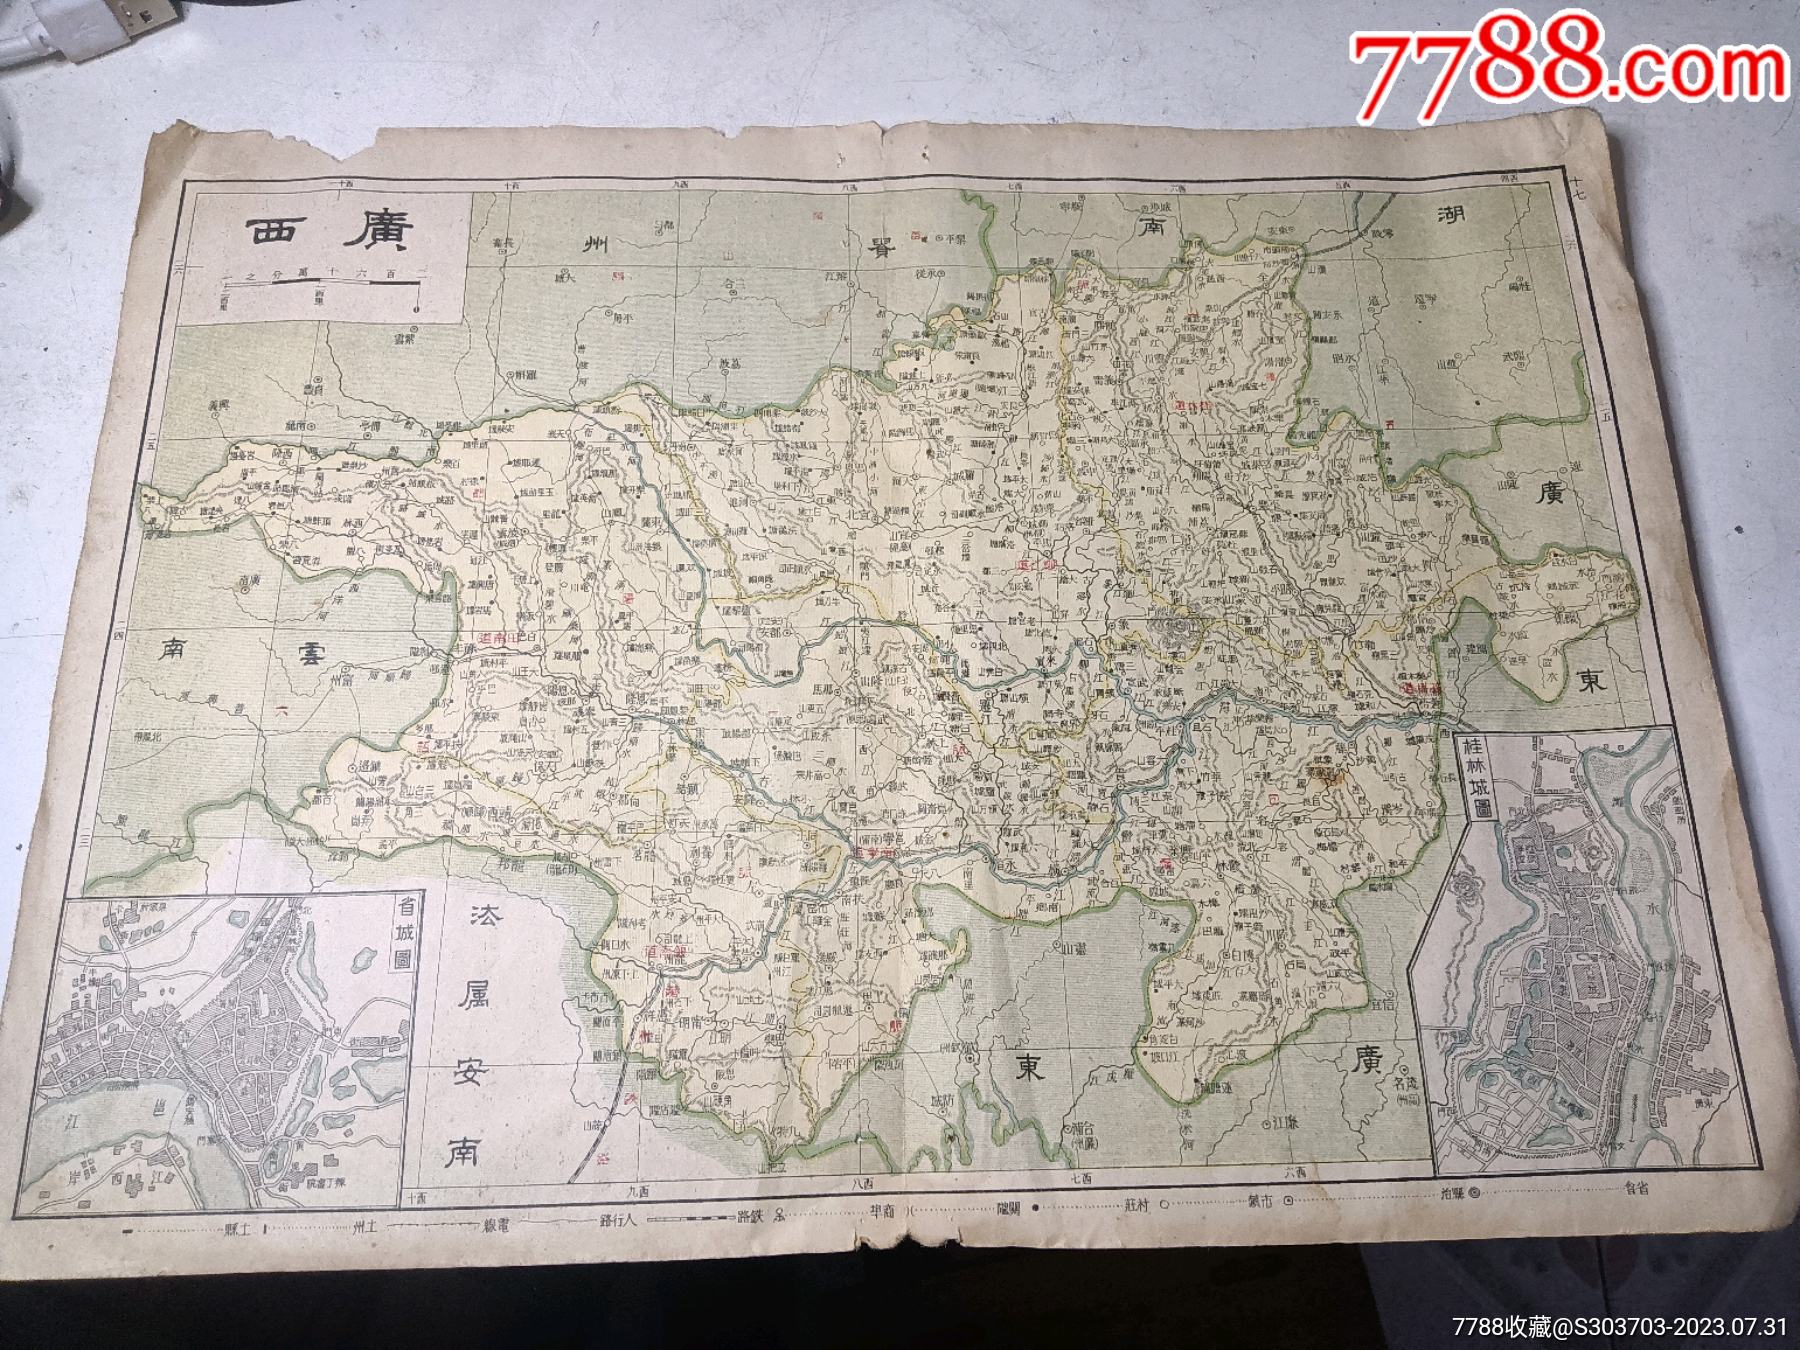 桂林旅游 手绘地图 桂林地图 桂林市地图 桂林旅游图_孔夫子旧书网